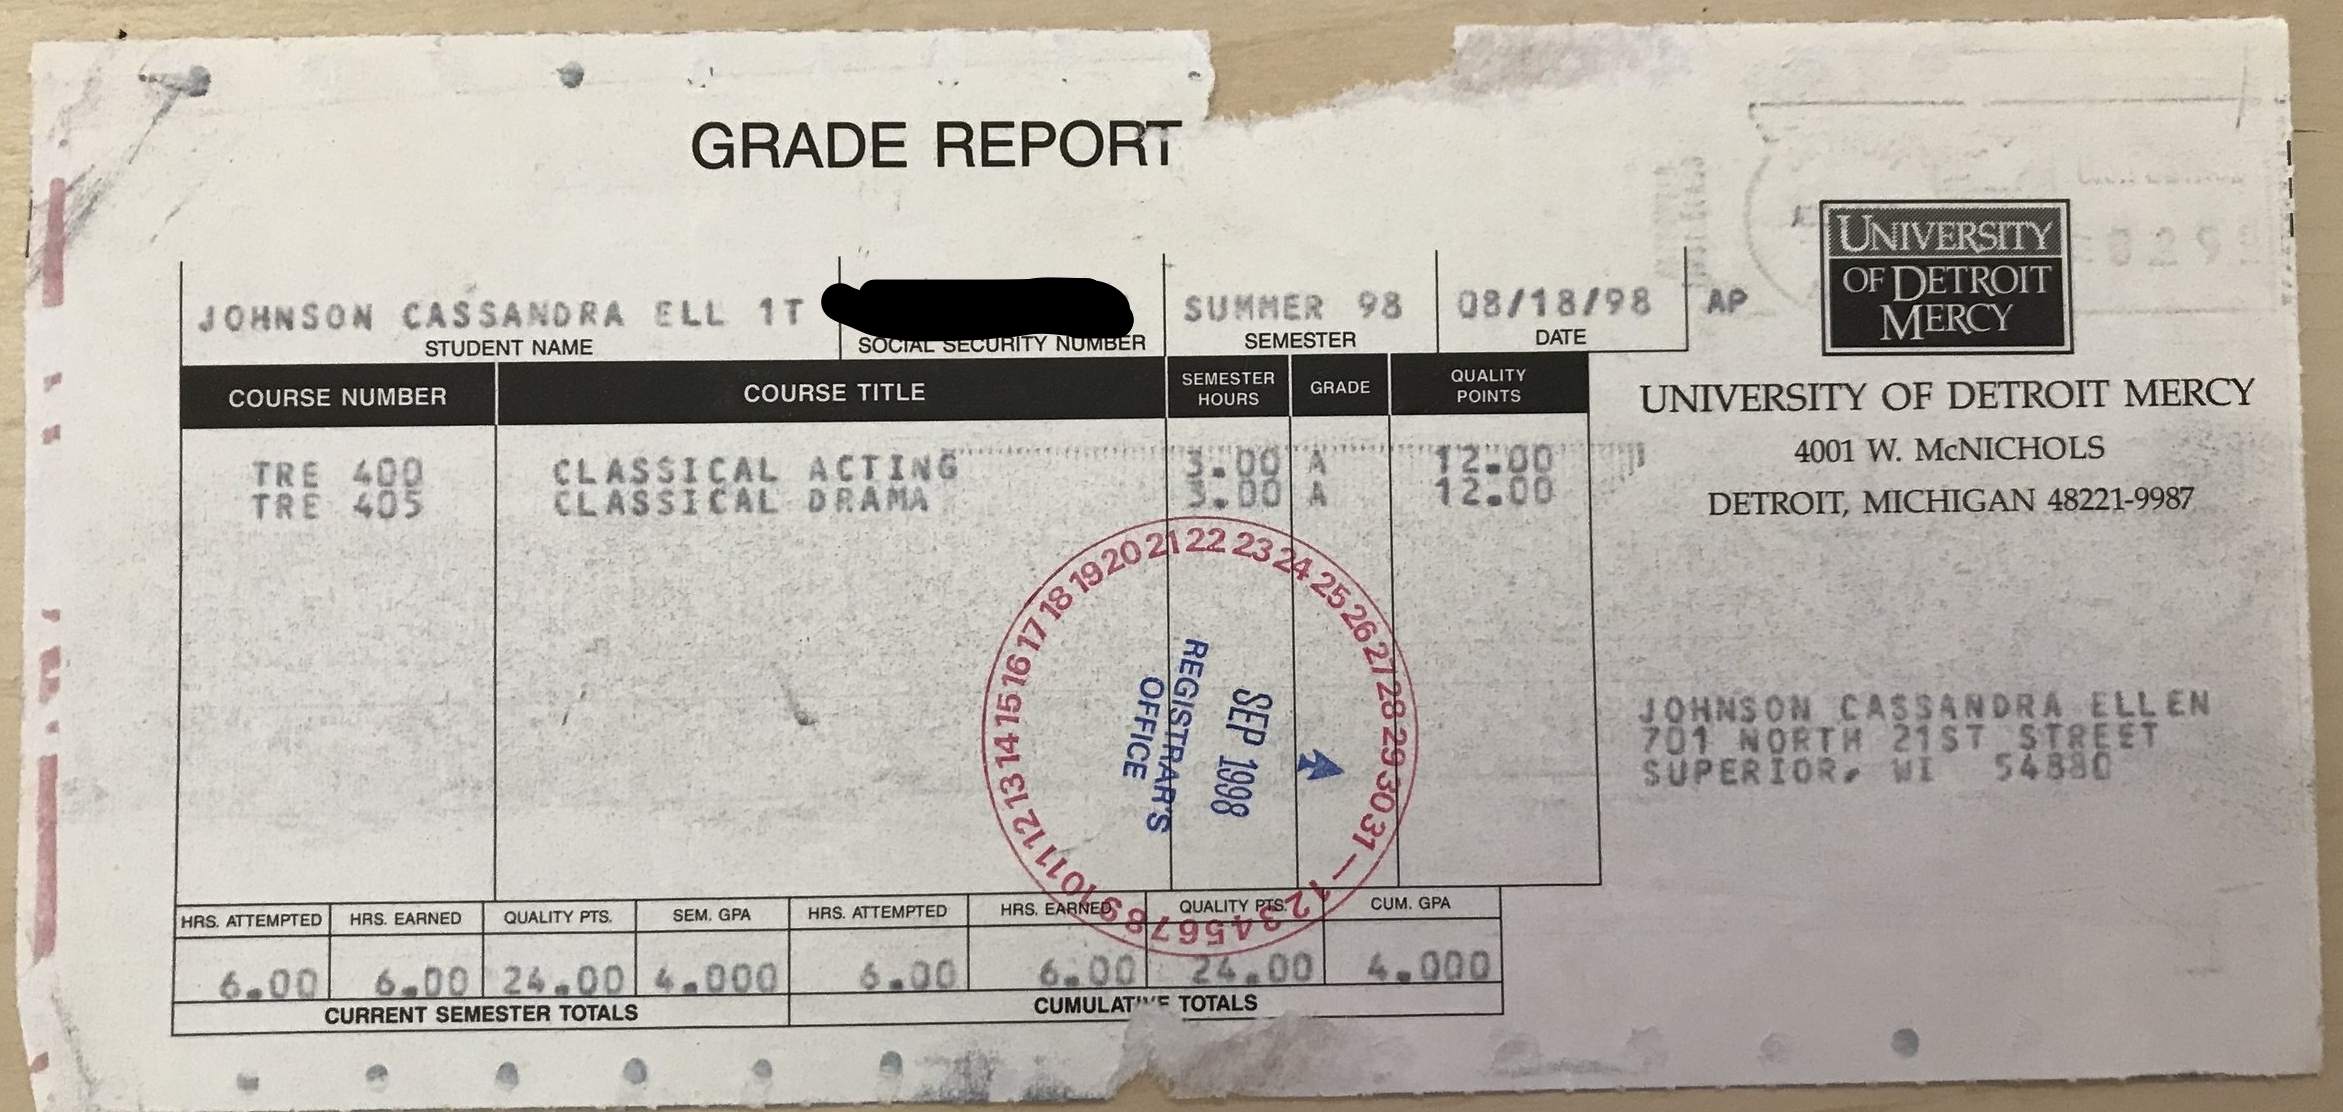 UD-Mercy Grade Report